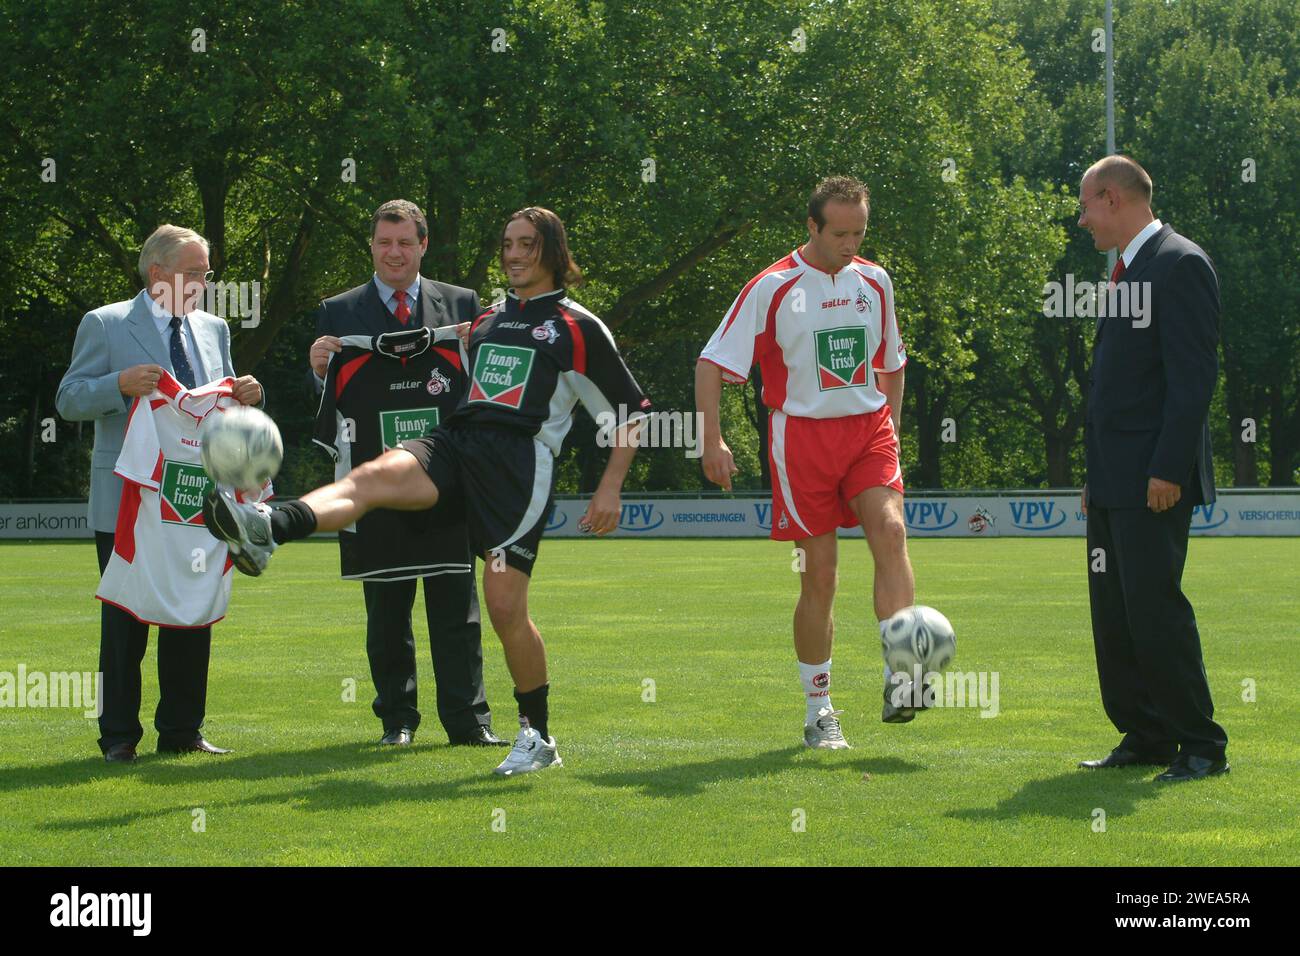 Pressetermin mit Sponsor lustig-frisch beim 1. FC Köln Fussballclub mit Fussballer Dirk Lottner und Mustafa Dogan, Deutschland 2003. Stockfoto